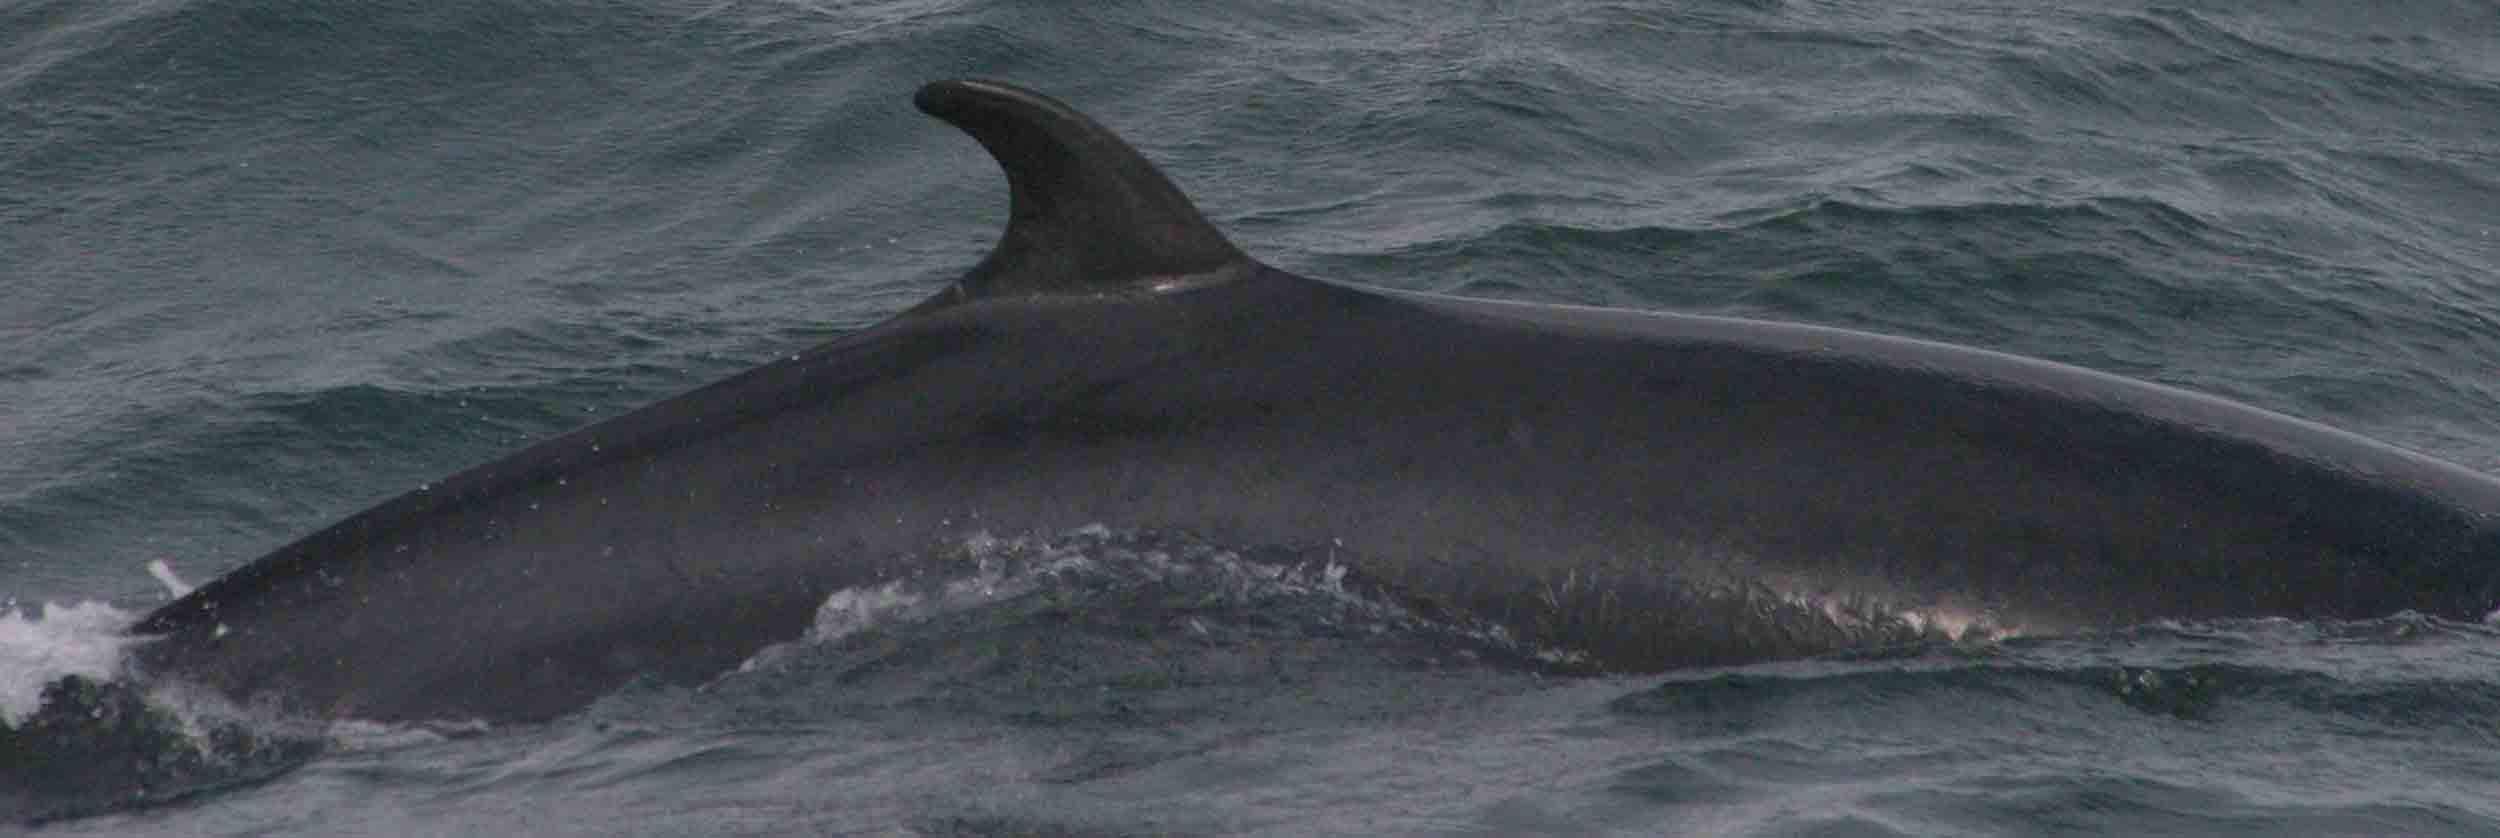 Le Japon confirme son intention de poursuivre sa chasse à la baleine